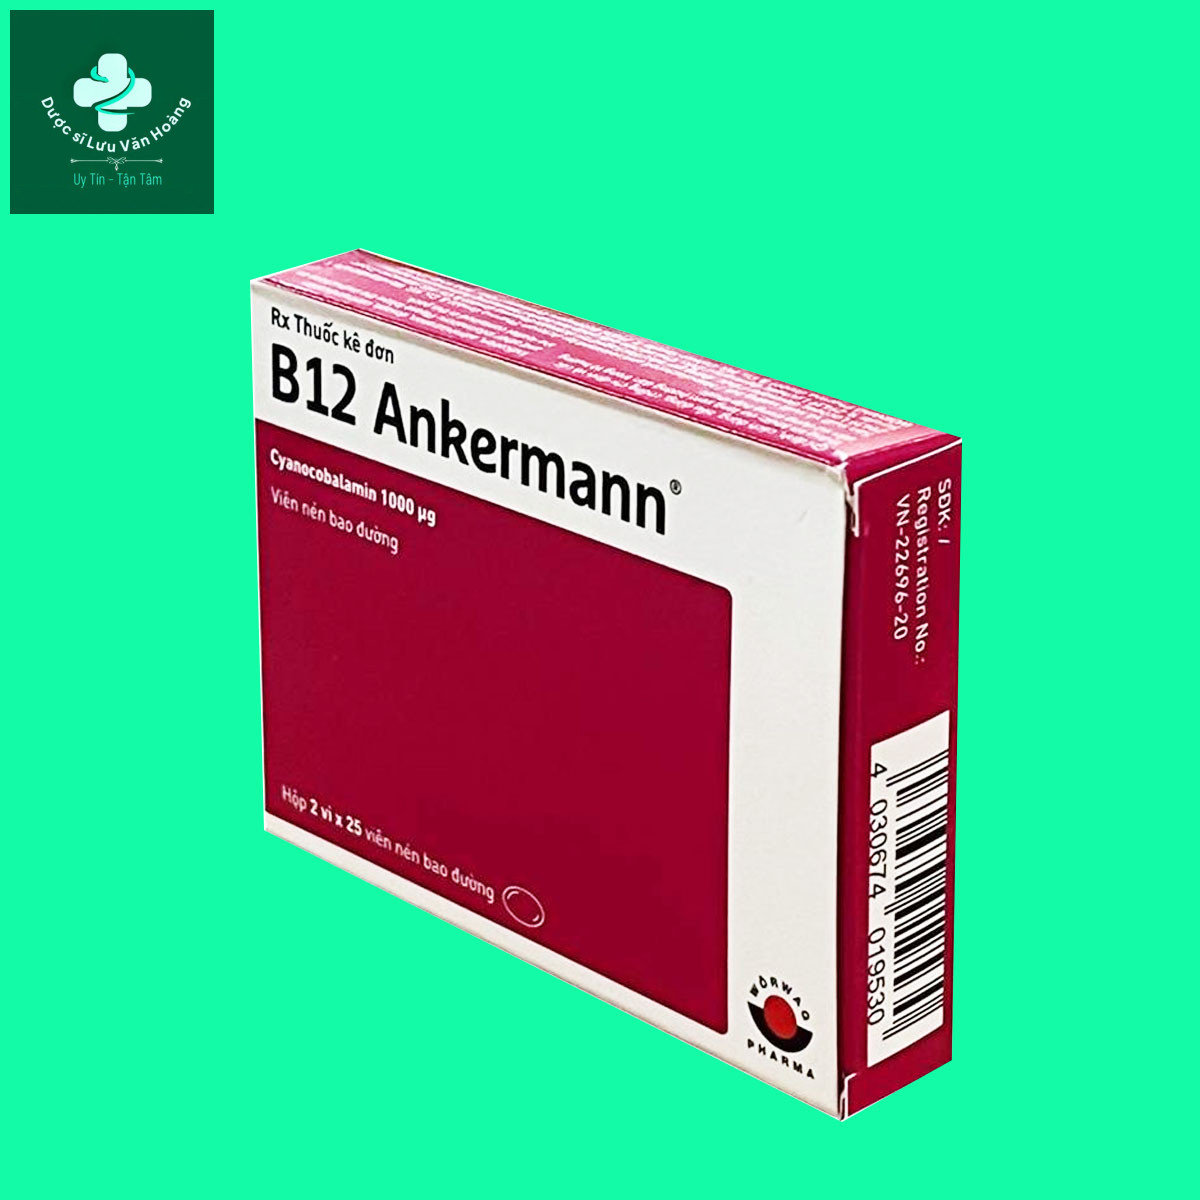 B12 Ankermann: Phòng và điều trị bệnh thiếu máu - Dược sĩ Lưu Văn